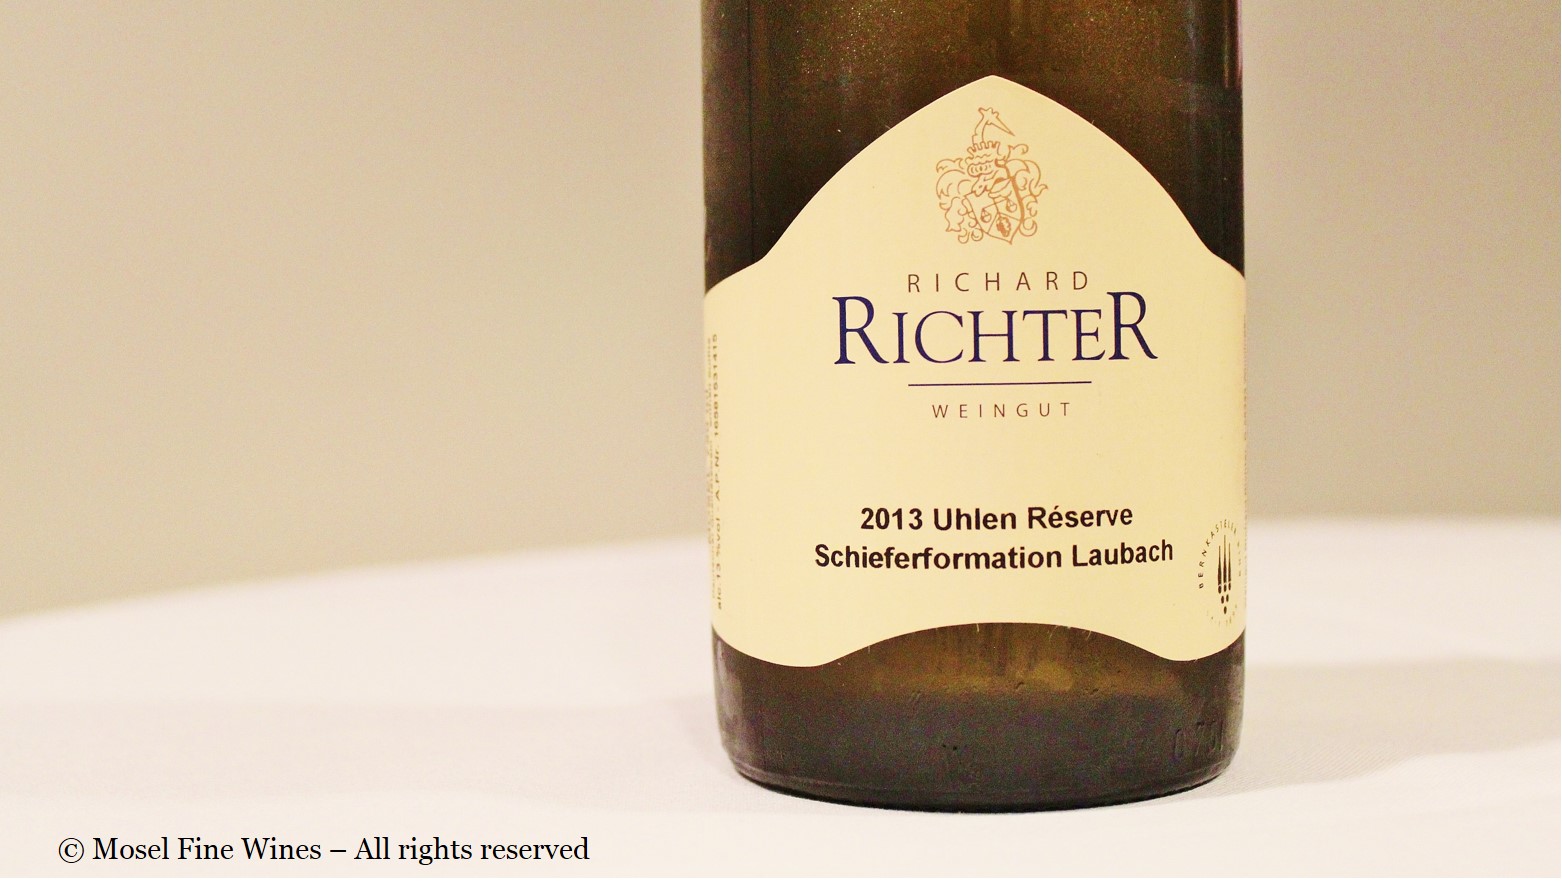 Richard Richter Winninger Uhlen Réserve Schieferformation Laubach 2013 Label